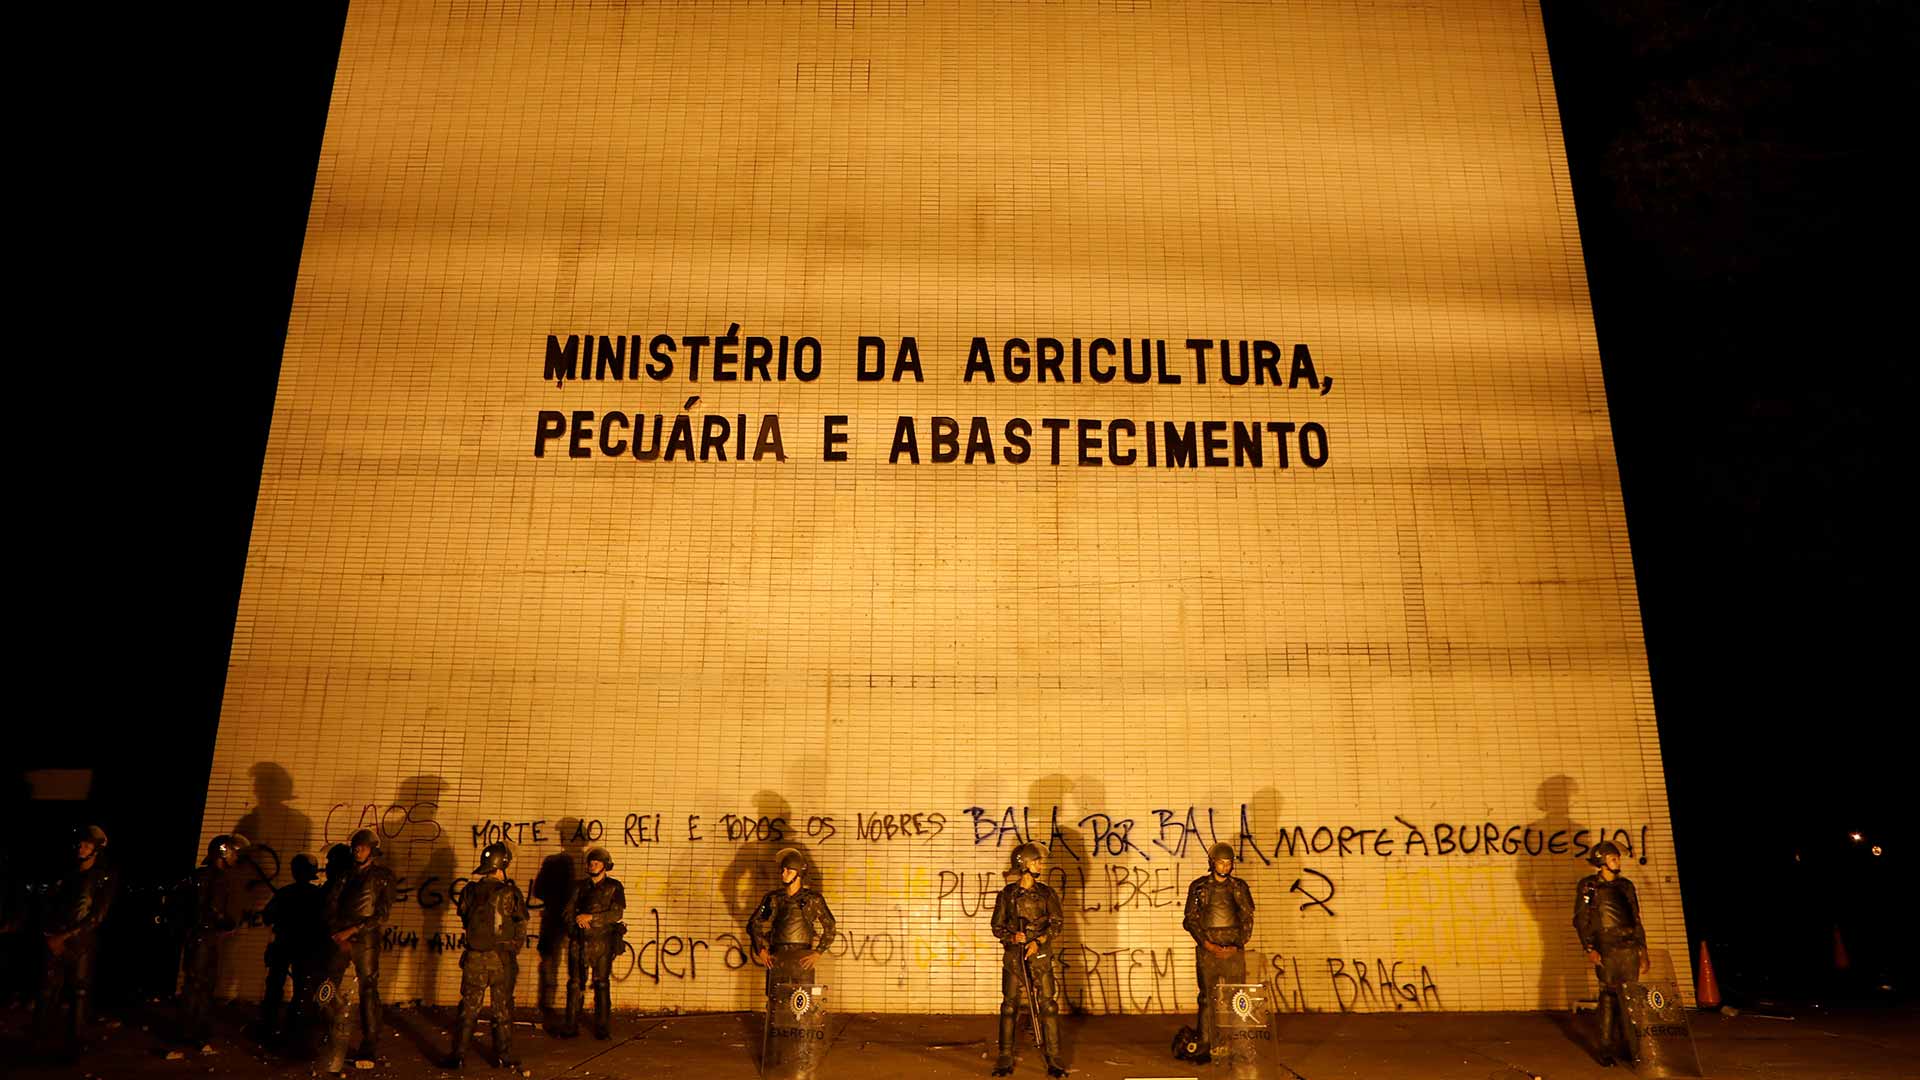 Temer retira las tropas de Brasilia en medio de fuertes críticas